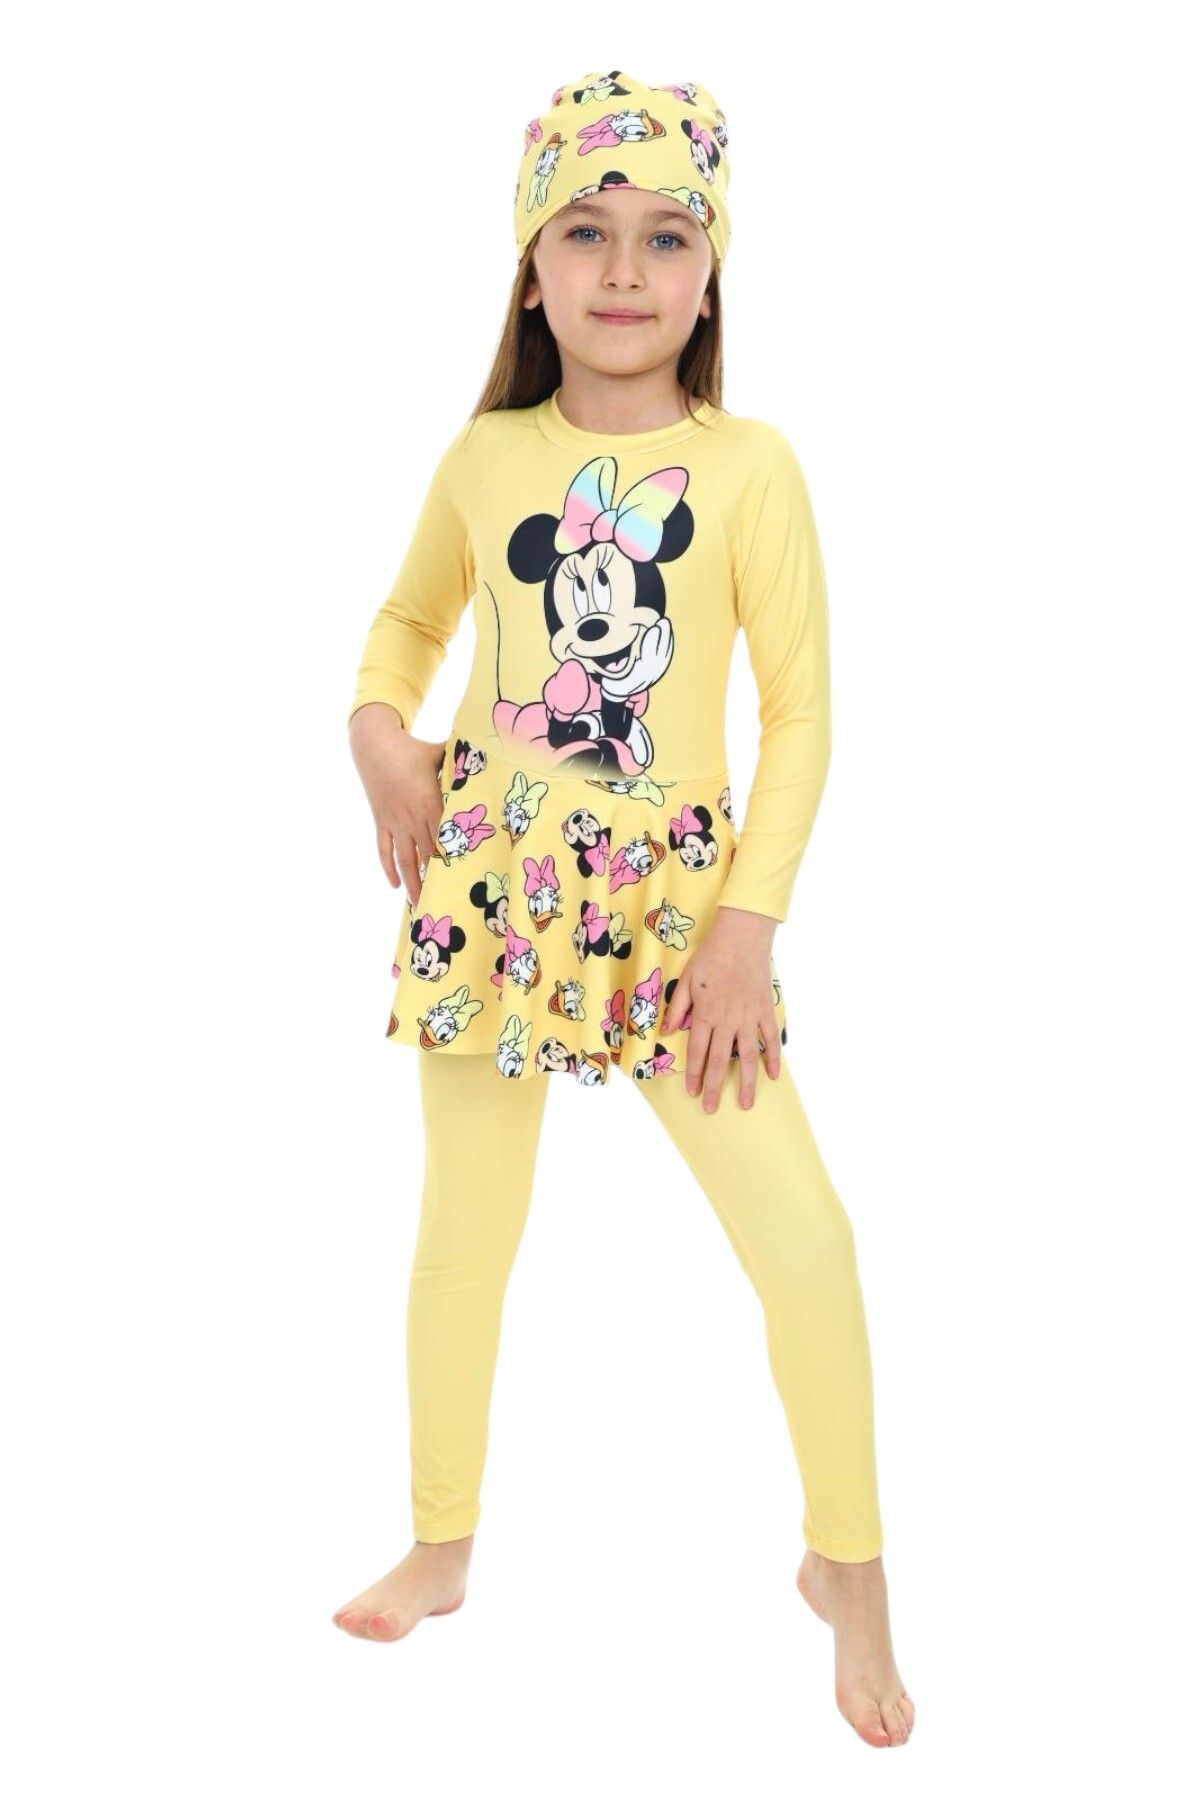 My Kids Wear Etek Detaylı Boneli Kız Çocuk Mayo